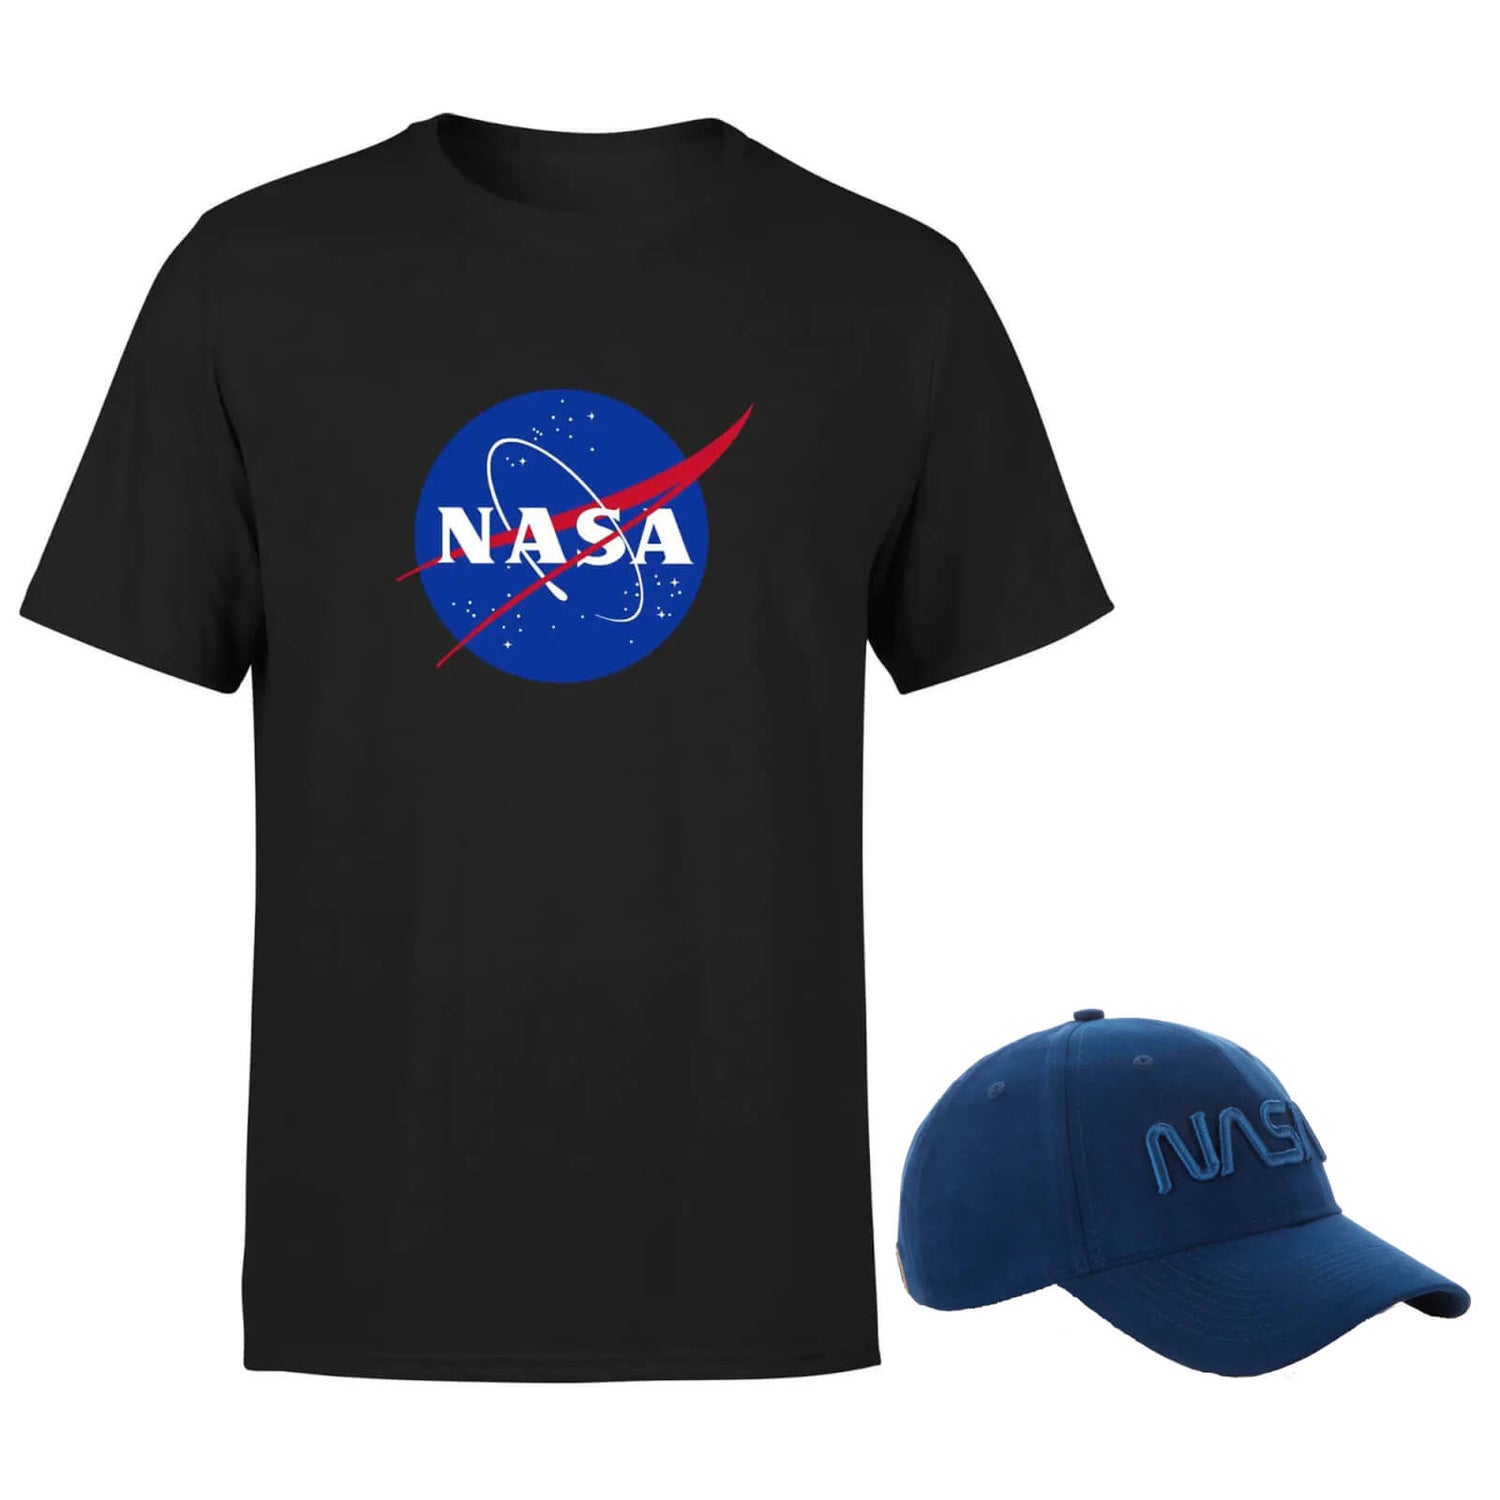 NASA Navy Cap & Nasa T-Shirt Bundle